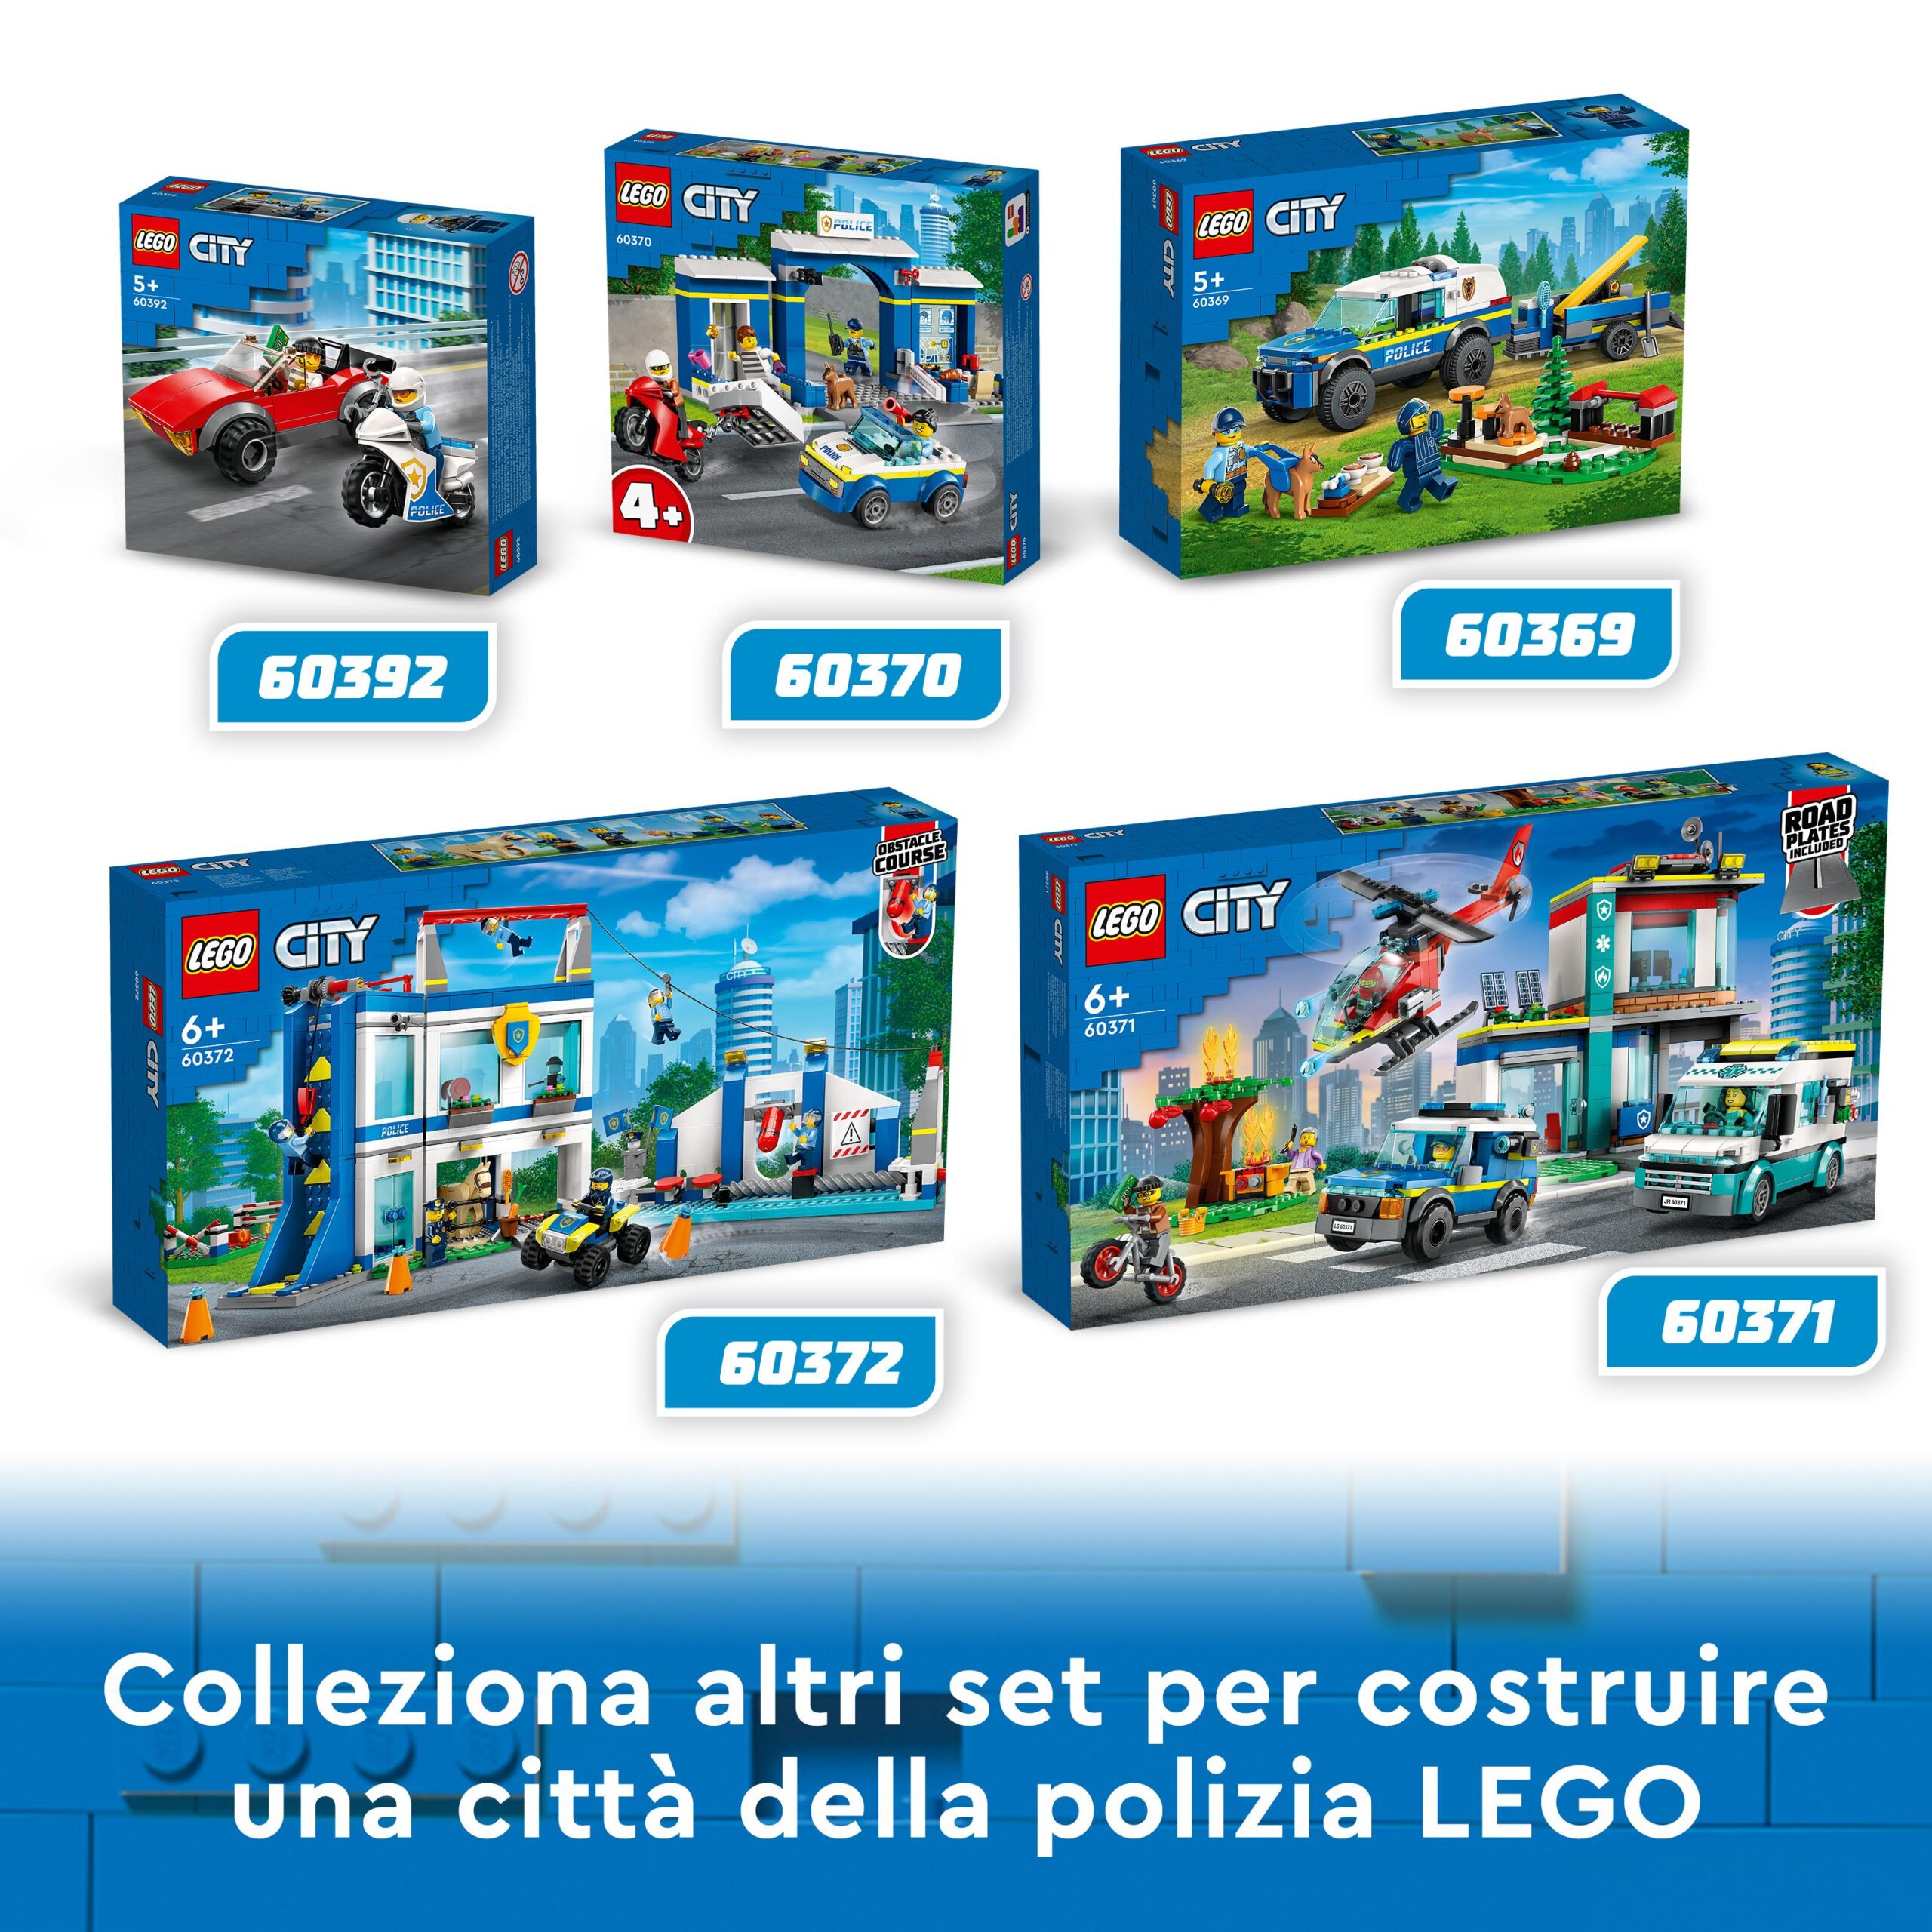 Lego city 60369 addestramento cinofilo mobile con suv macchina polizia giocattolo e rimorchio, 2 animali, giochi per bambini - LEGO CITY